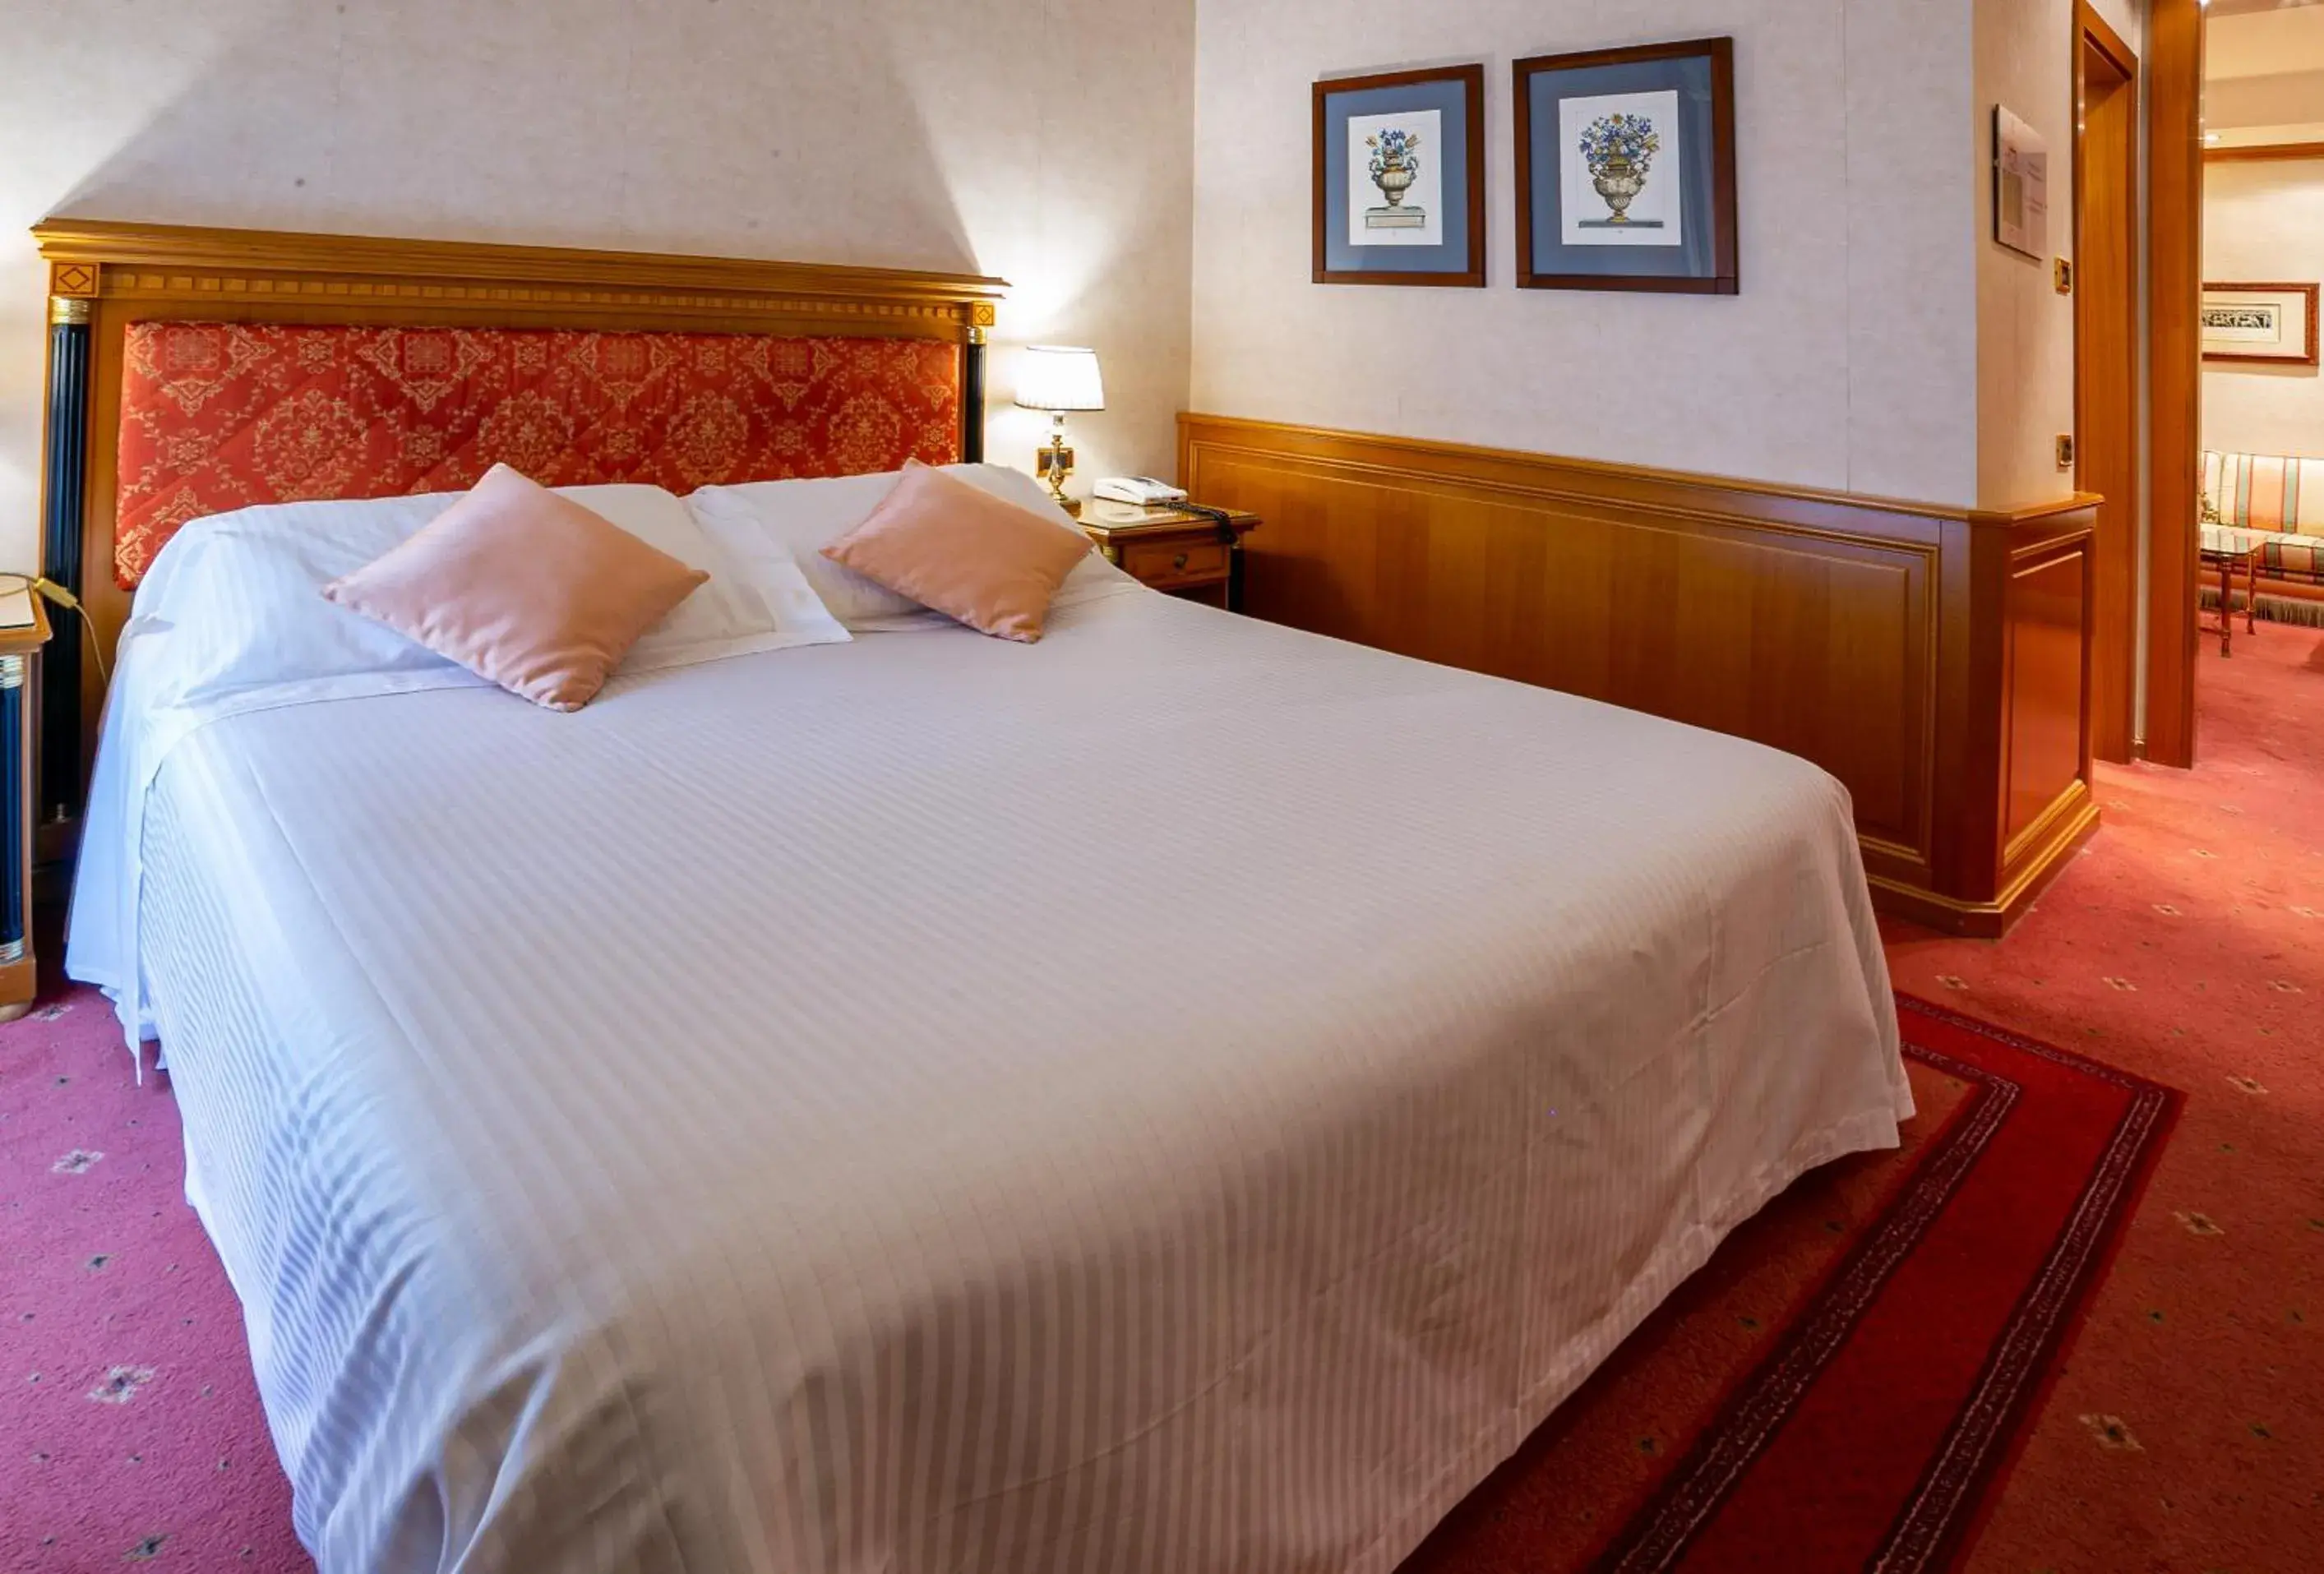 Bedroom, Bed in Best Western Hotel Cappello d'Oro